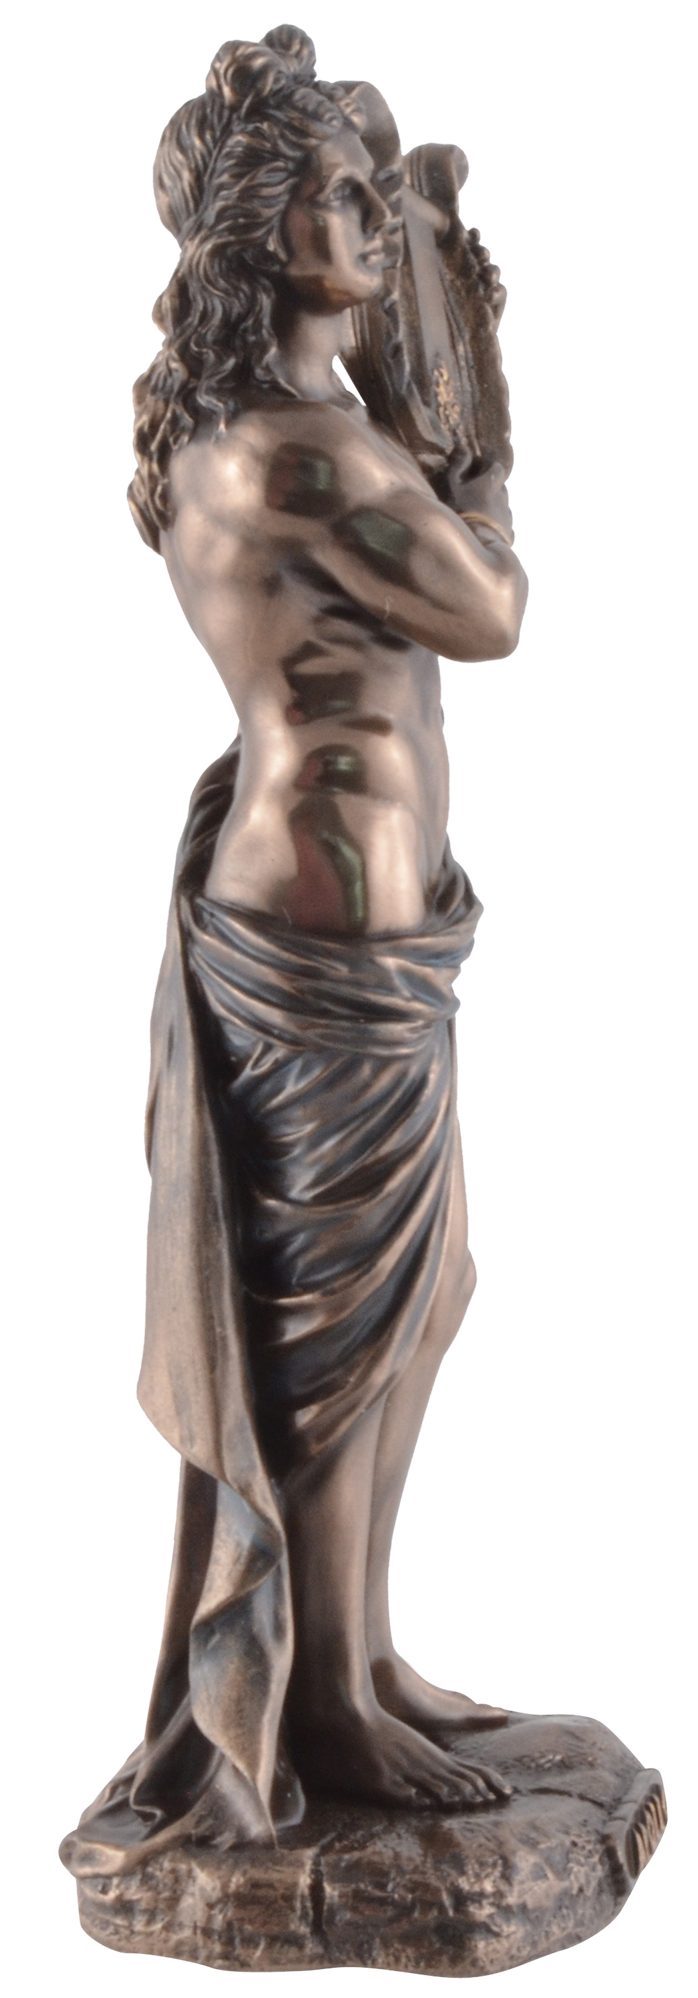 bronziert/coloriert, Dekofigur 7x5x16cm ca. Griechischer Gott Veronesedesign, L/B/H Größe: Apollo, Gmbh Vogler direct